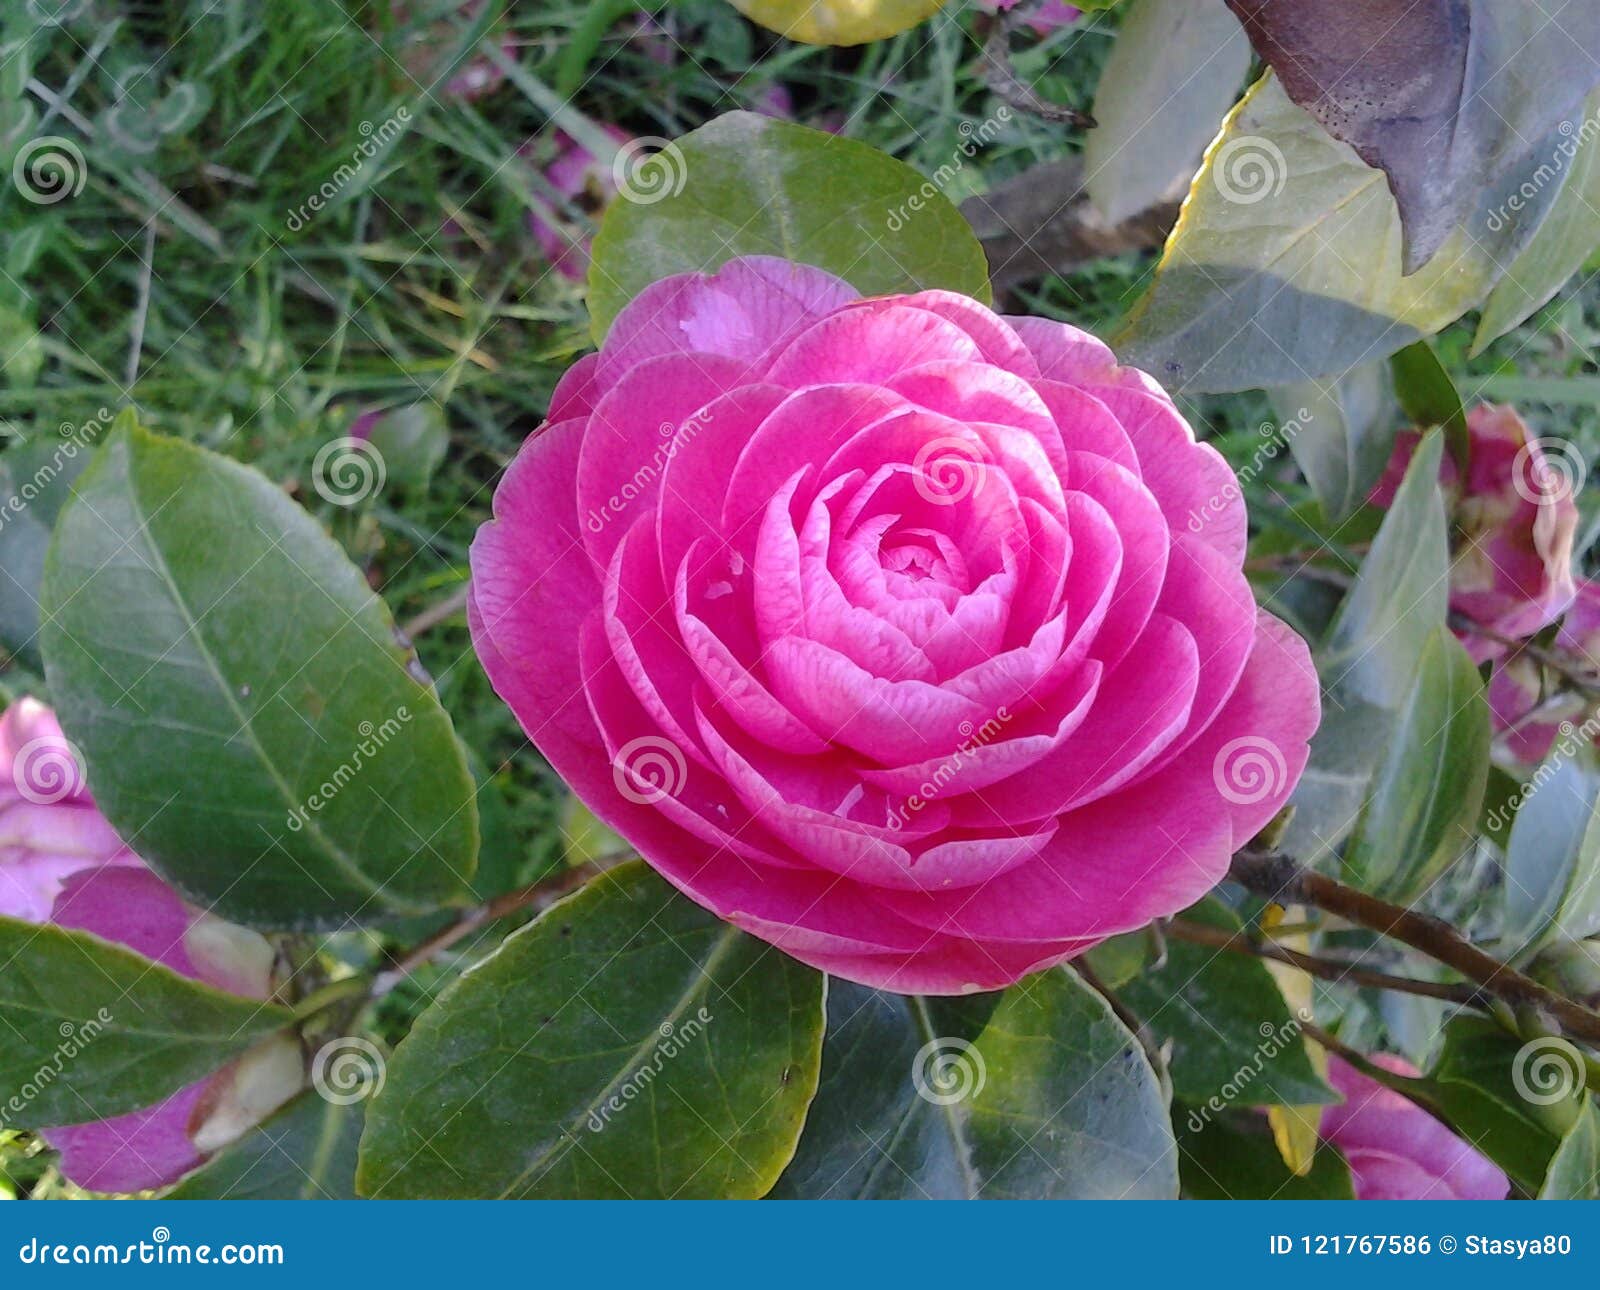 A Beautiful Fuchsia Camellia in a Garden Stock Photo - Image of symmetry,  colour: 121767586